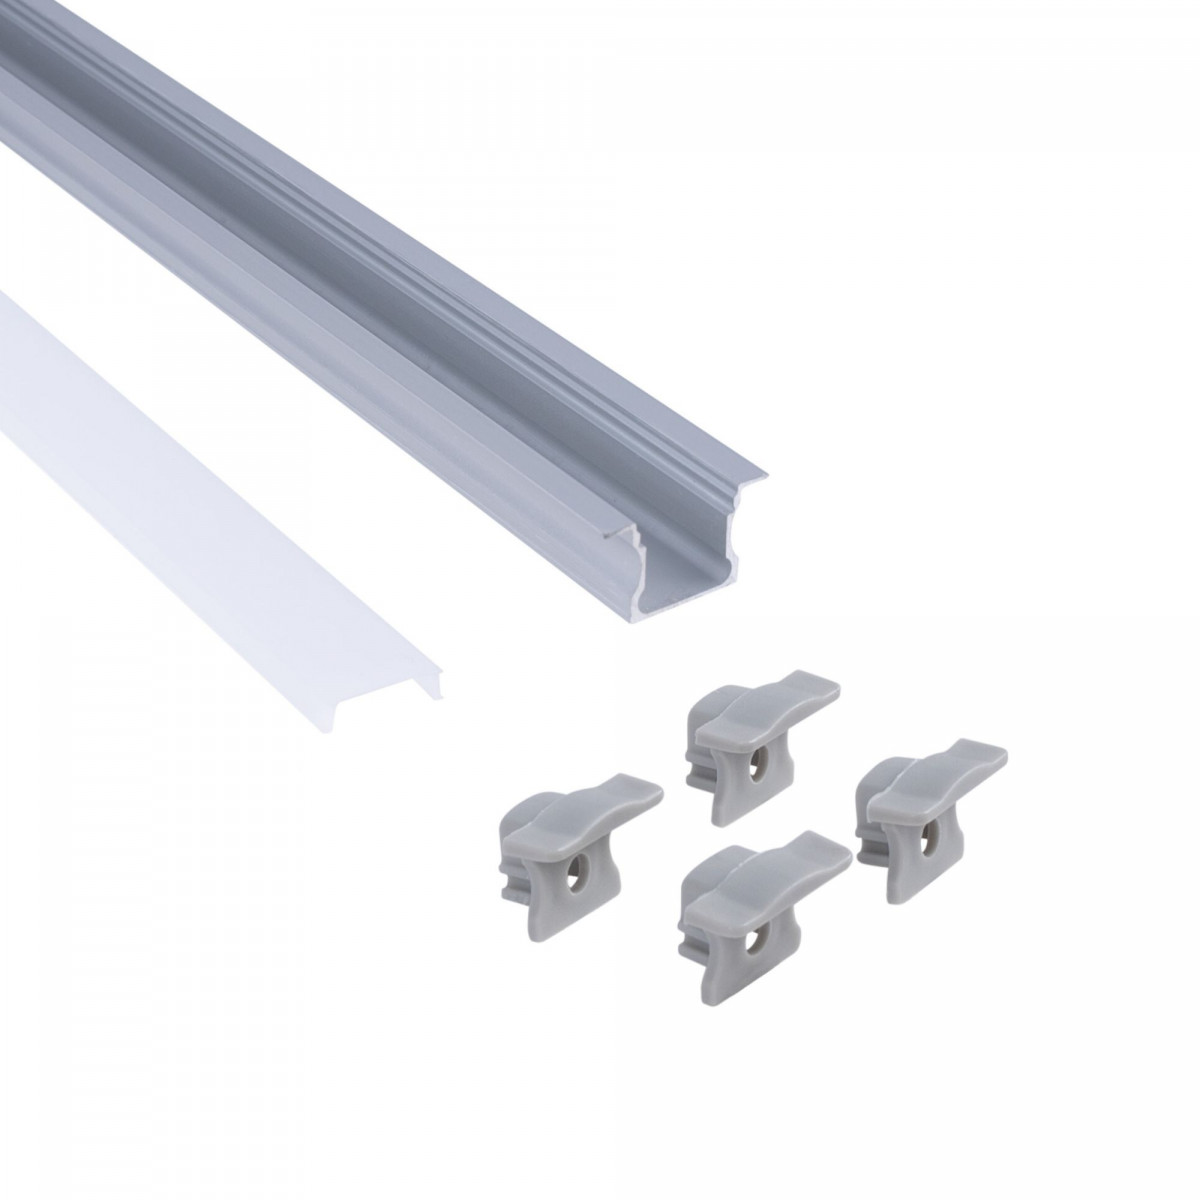 Alu Einbau Profil - Komplettset - 25 x 14,5mm - ≤12mm LED Streifen - 2 Meter - LED Strip montieren, Zubehör